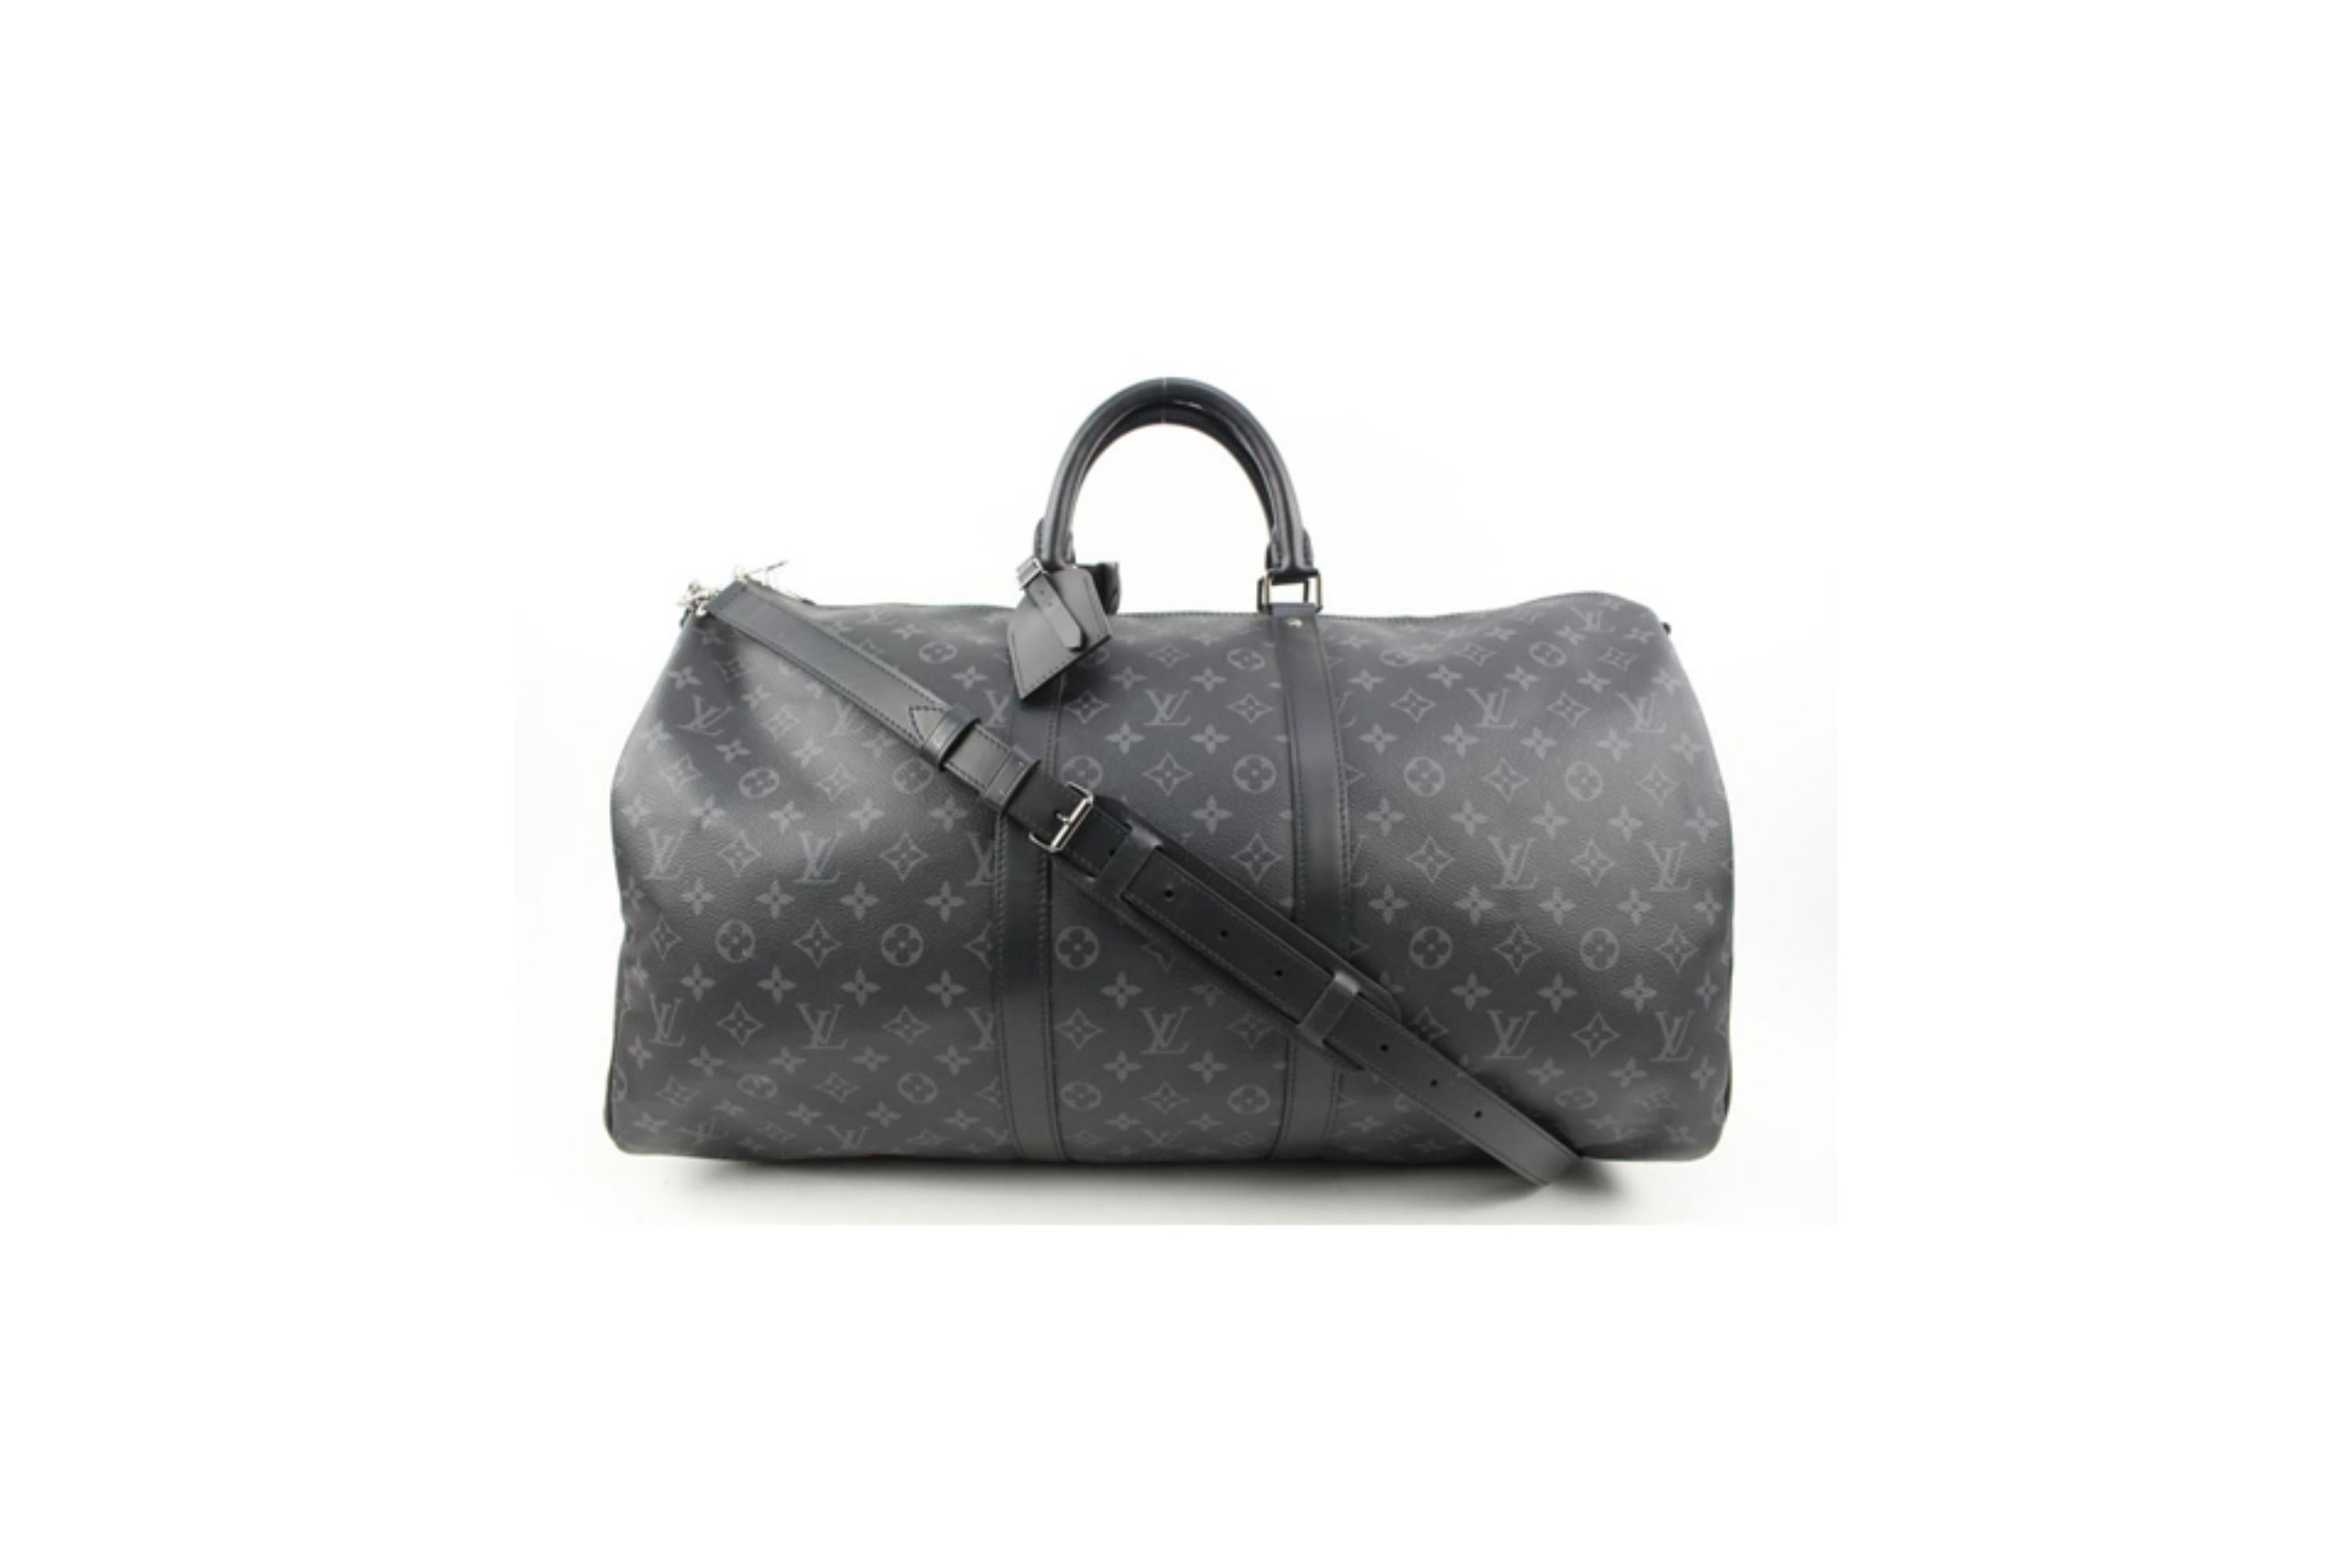 Louis Vuitton Duffle Bag Review, WIMB, & Mod Shots! - YouTube